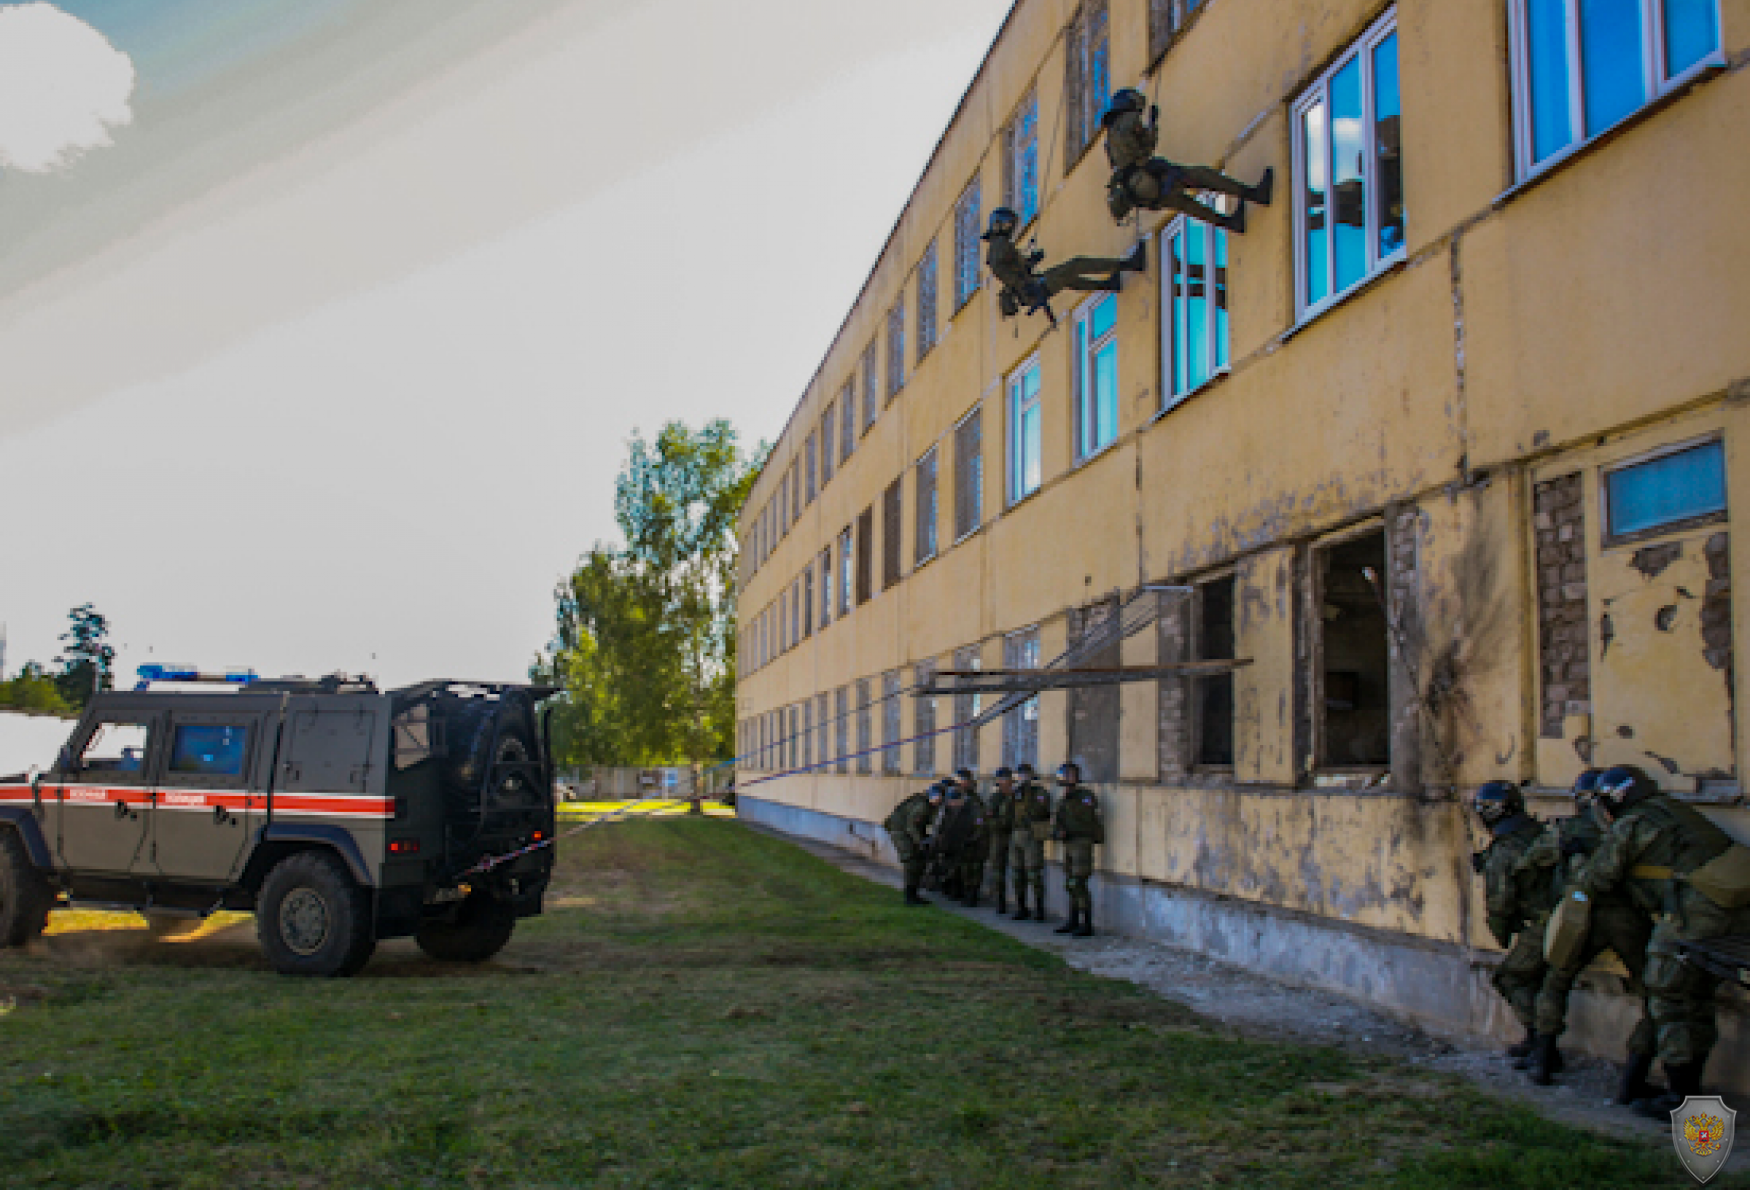 Комплексные тренировки противодействия терроризму провели подразделения военной полиции ЗВО в Нижегородской области